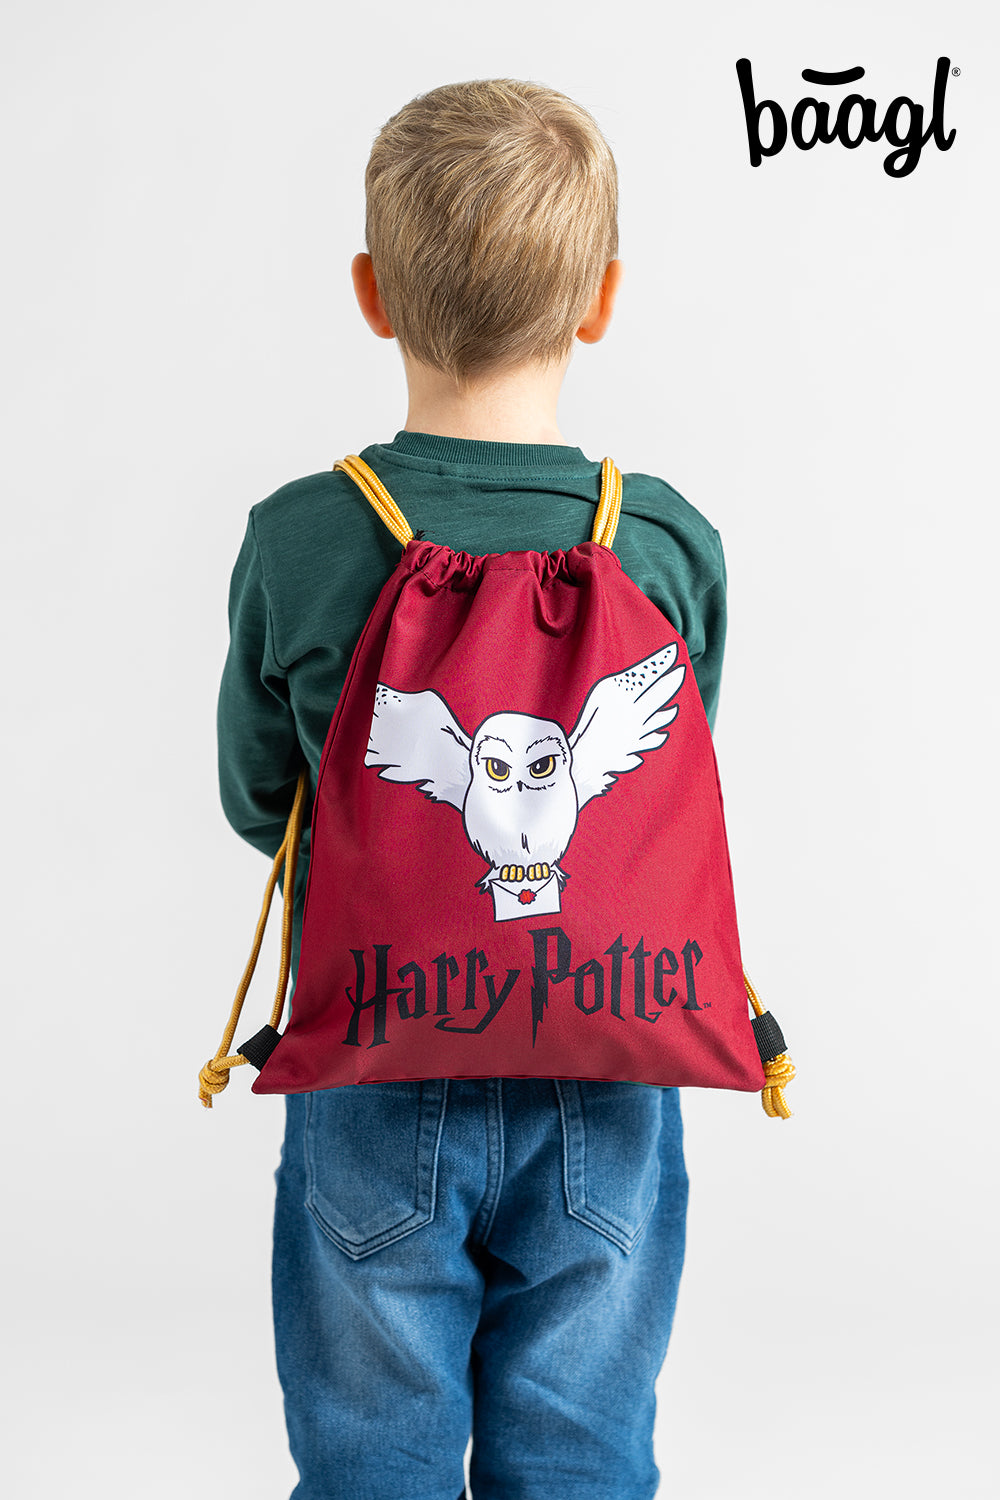 Předškolní sáček Harry Potter Hedvika